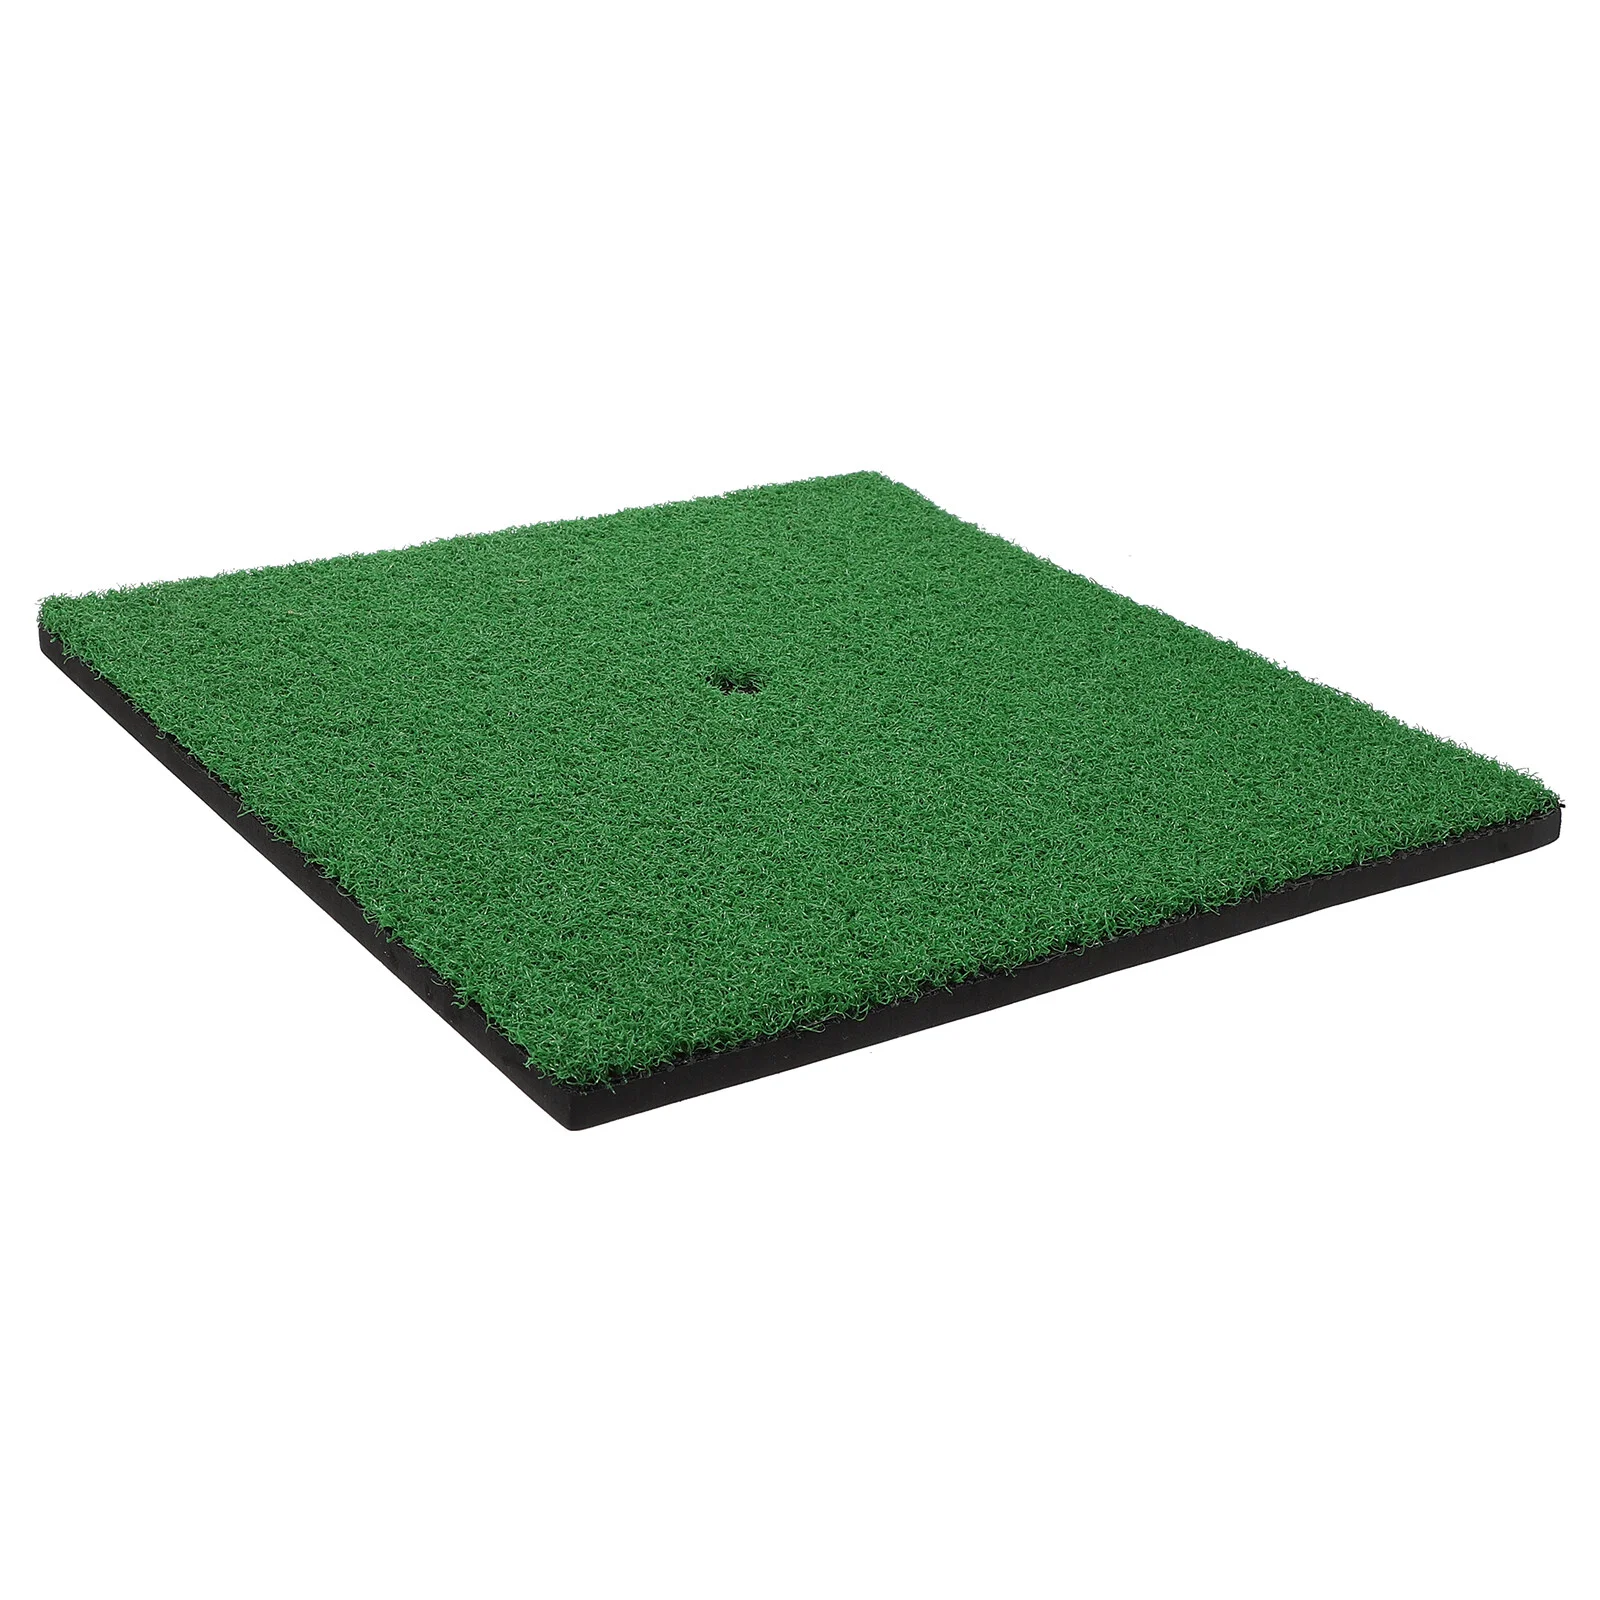 

Practice Mat Outdoor+mats Balls Putter Portable Golfing Hitting Simulated Grass Artificial Aid 8mmeva Foam Bottom Home Pad